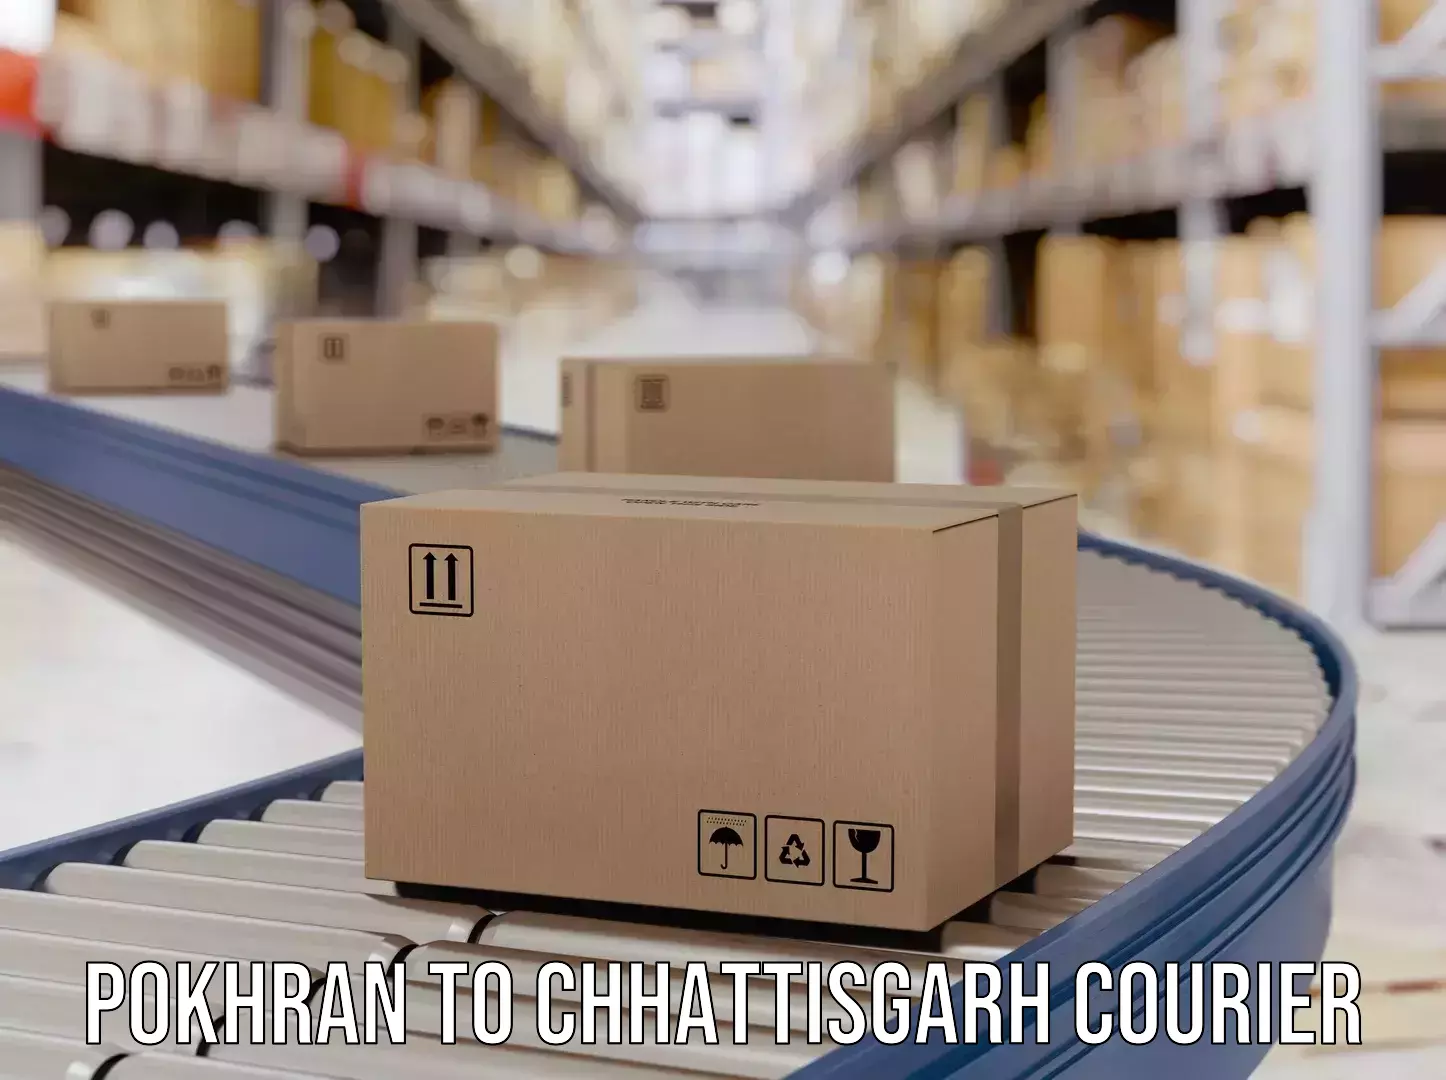 Courier service efficiency Pokhran to keshkal